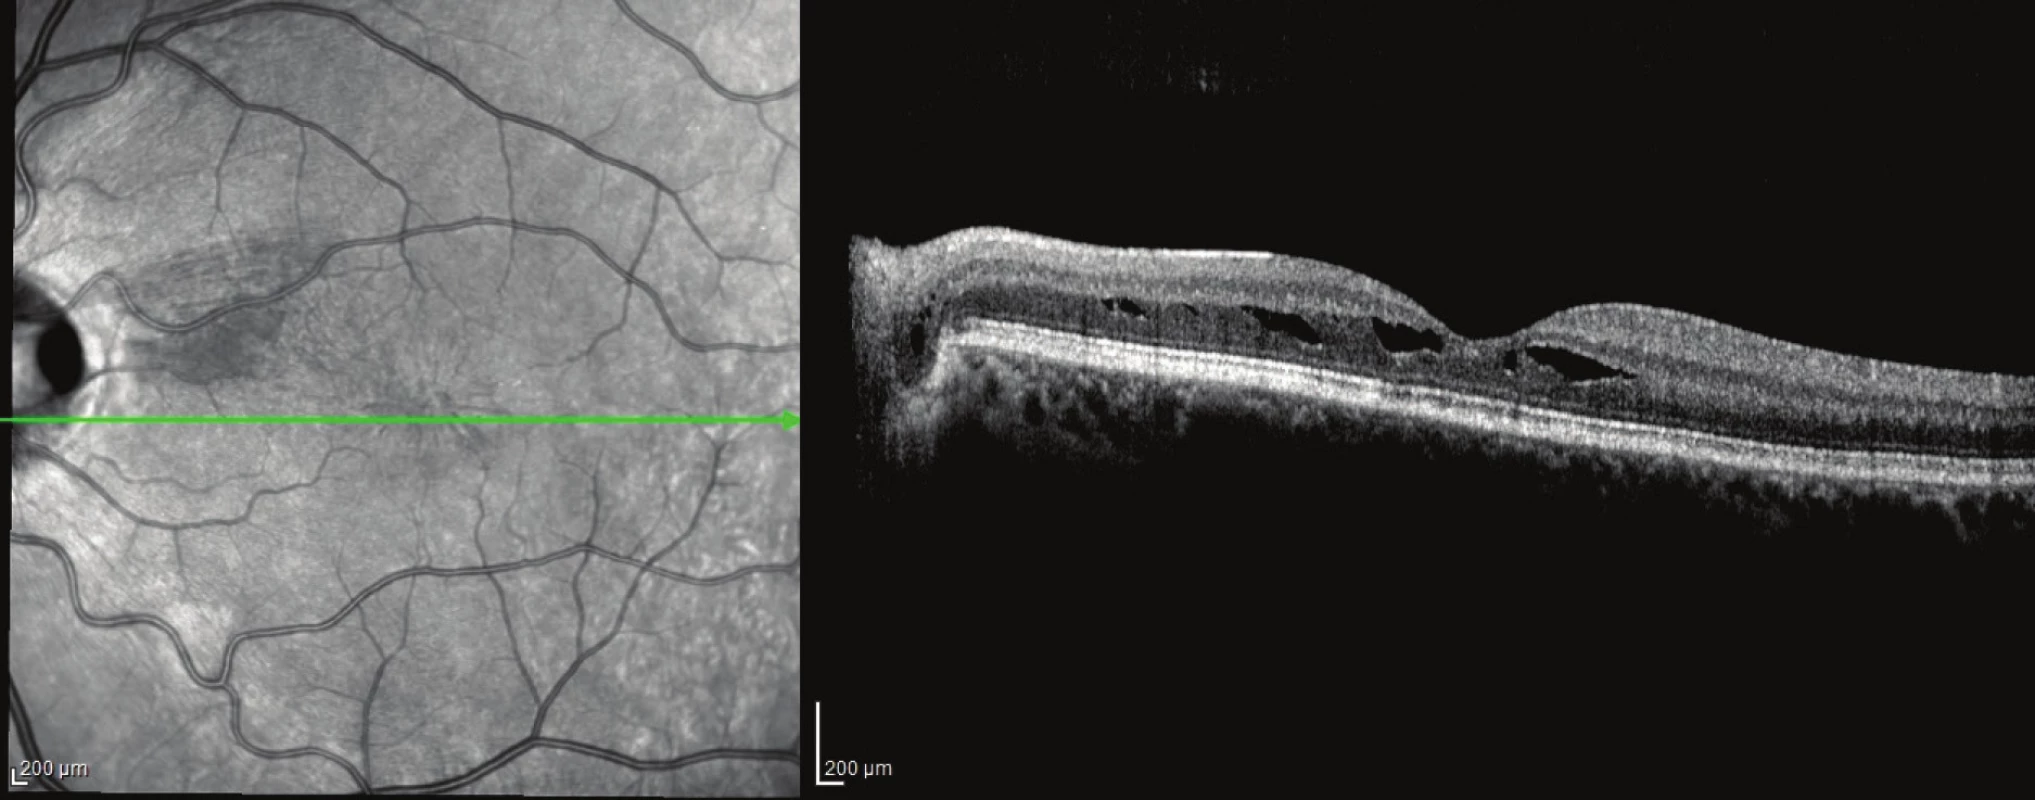 Pacient č. 4
Lineální horizontální transpapilární OCT sken OL po PPV, resorbce subretinální tekutiny a uzavřená komunikace mezi jamkou terče a makulární retinochízou zevní vrstvy sítnice